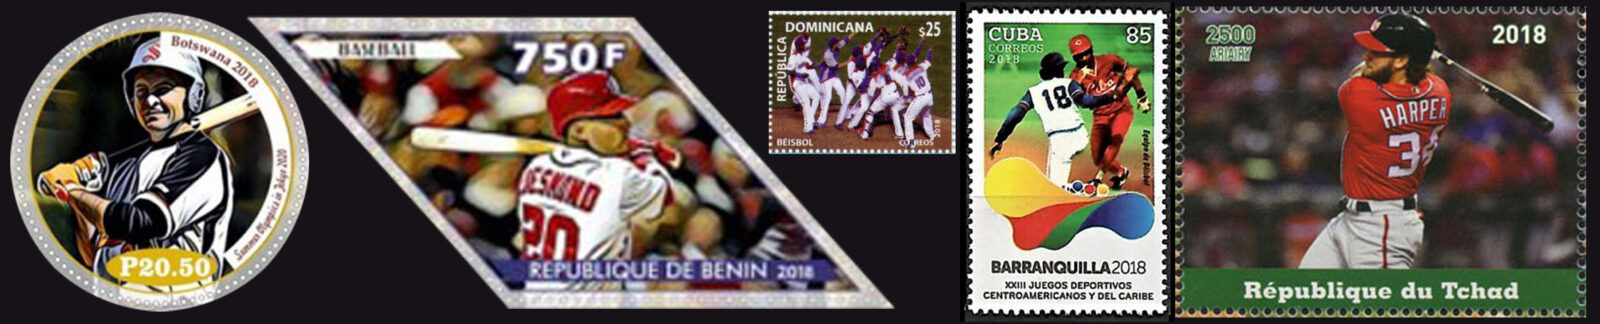 2018 Baseball Postage Stamps header